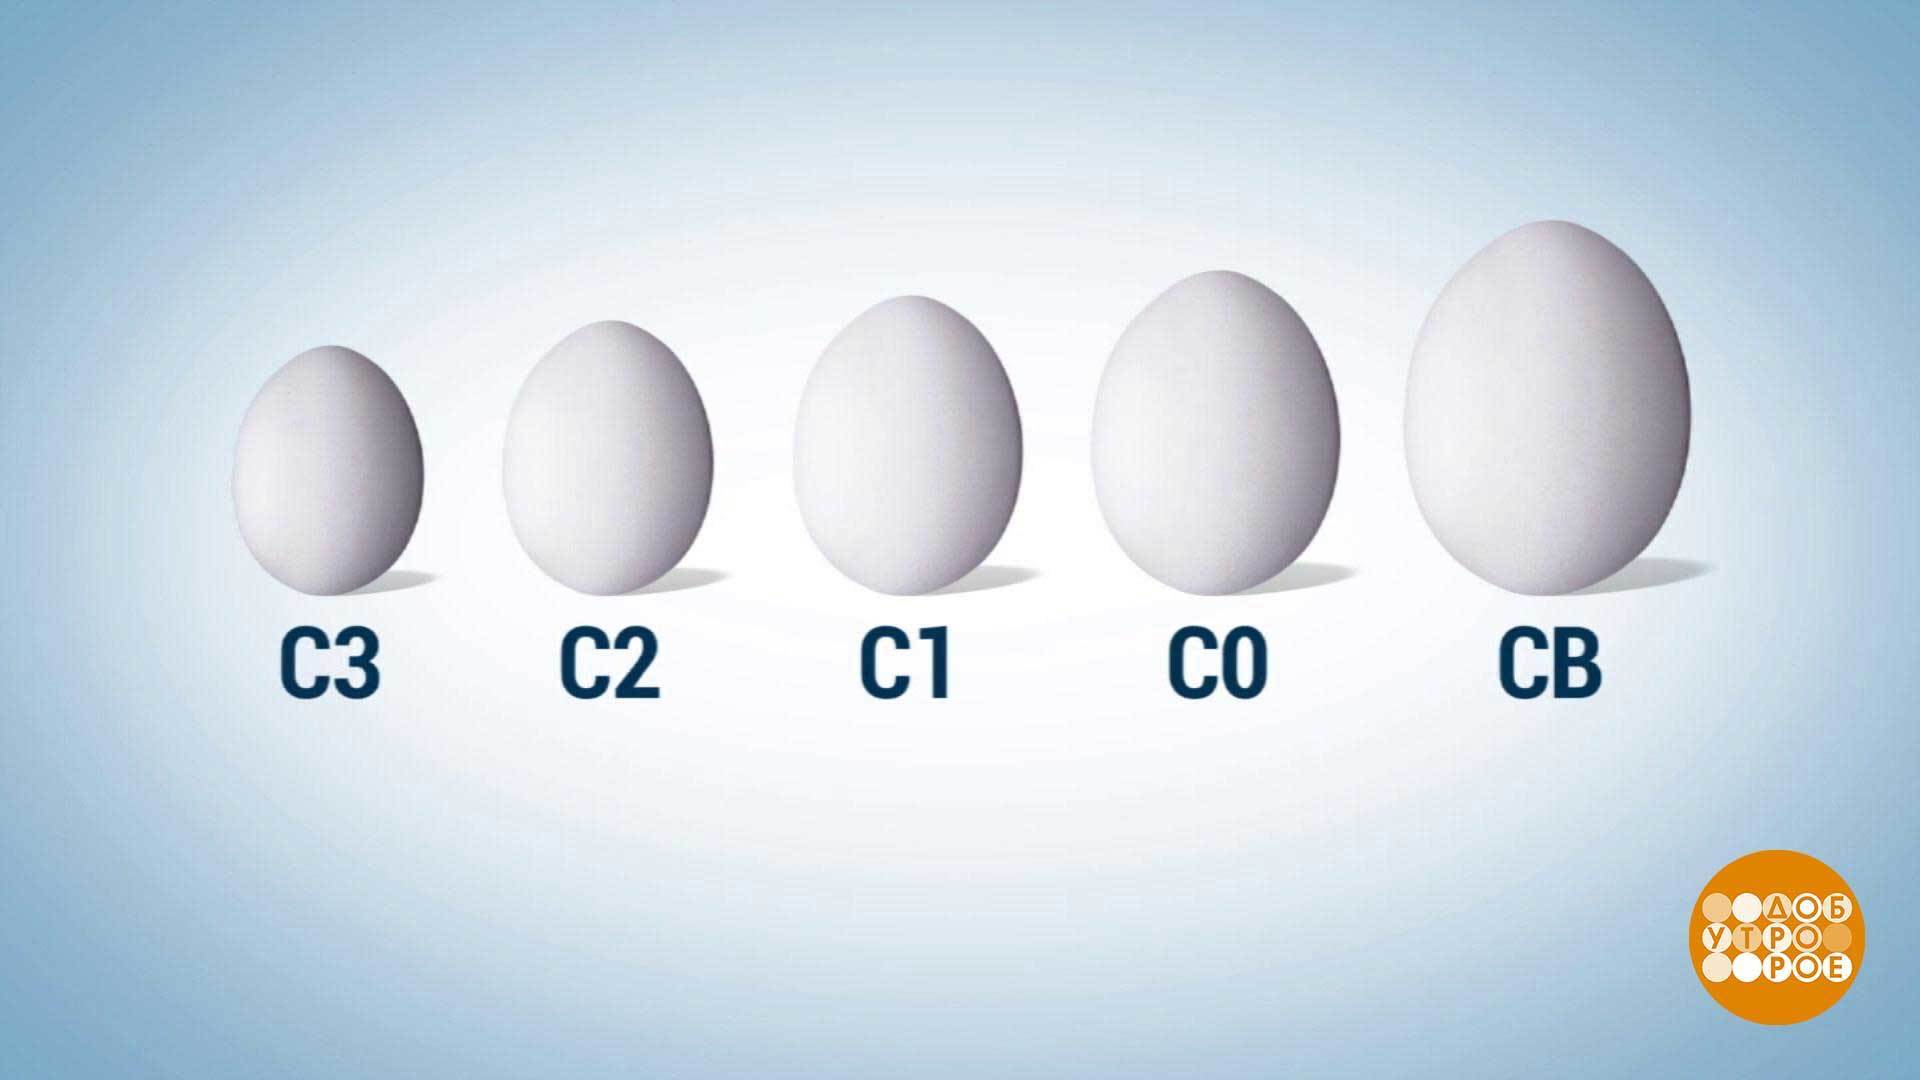 Яйца с0 или с2. Маркировка яиц. Маркирование яиц. Категории яиц куриных. Обозначение яиц.